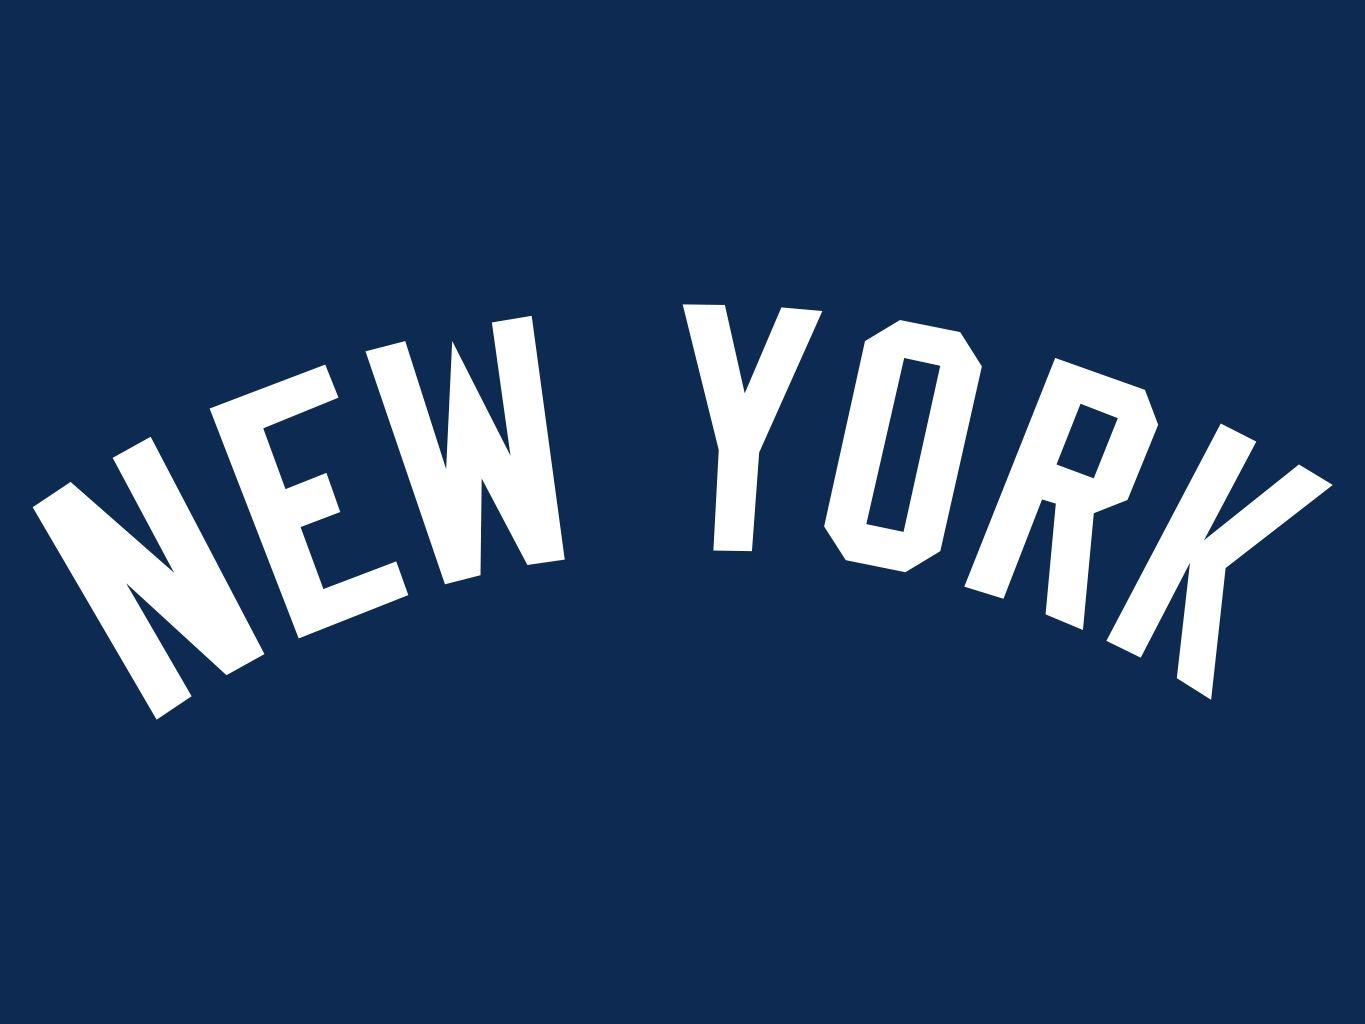 New York Yankees HD image. New York Yankees wallpaper